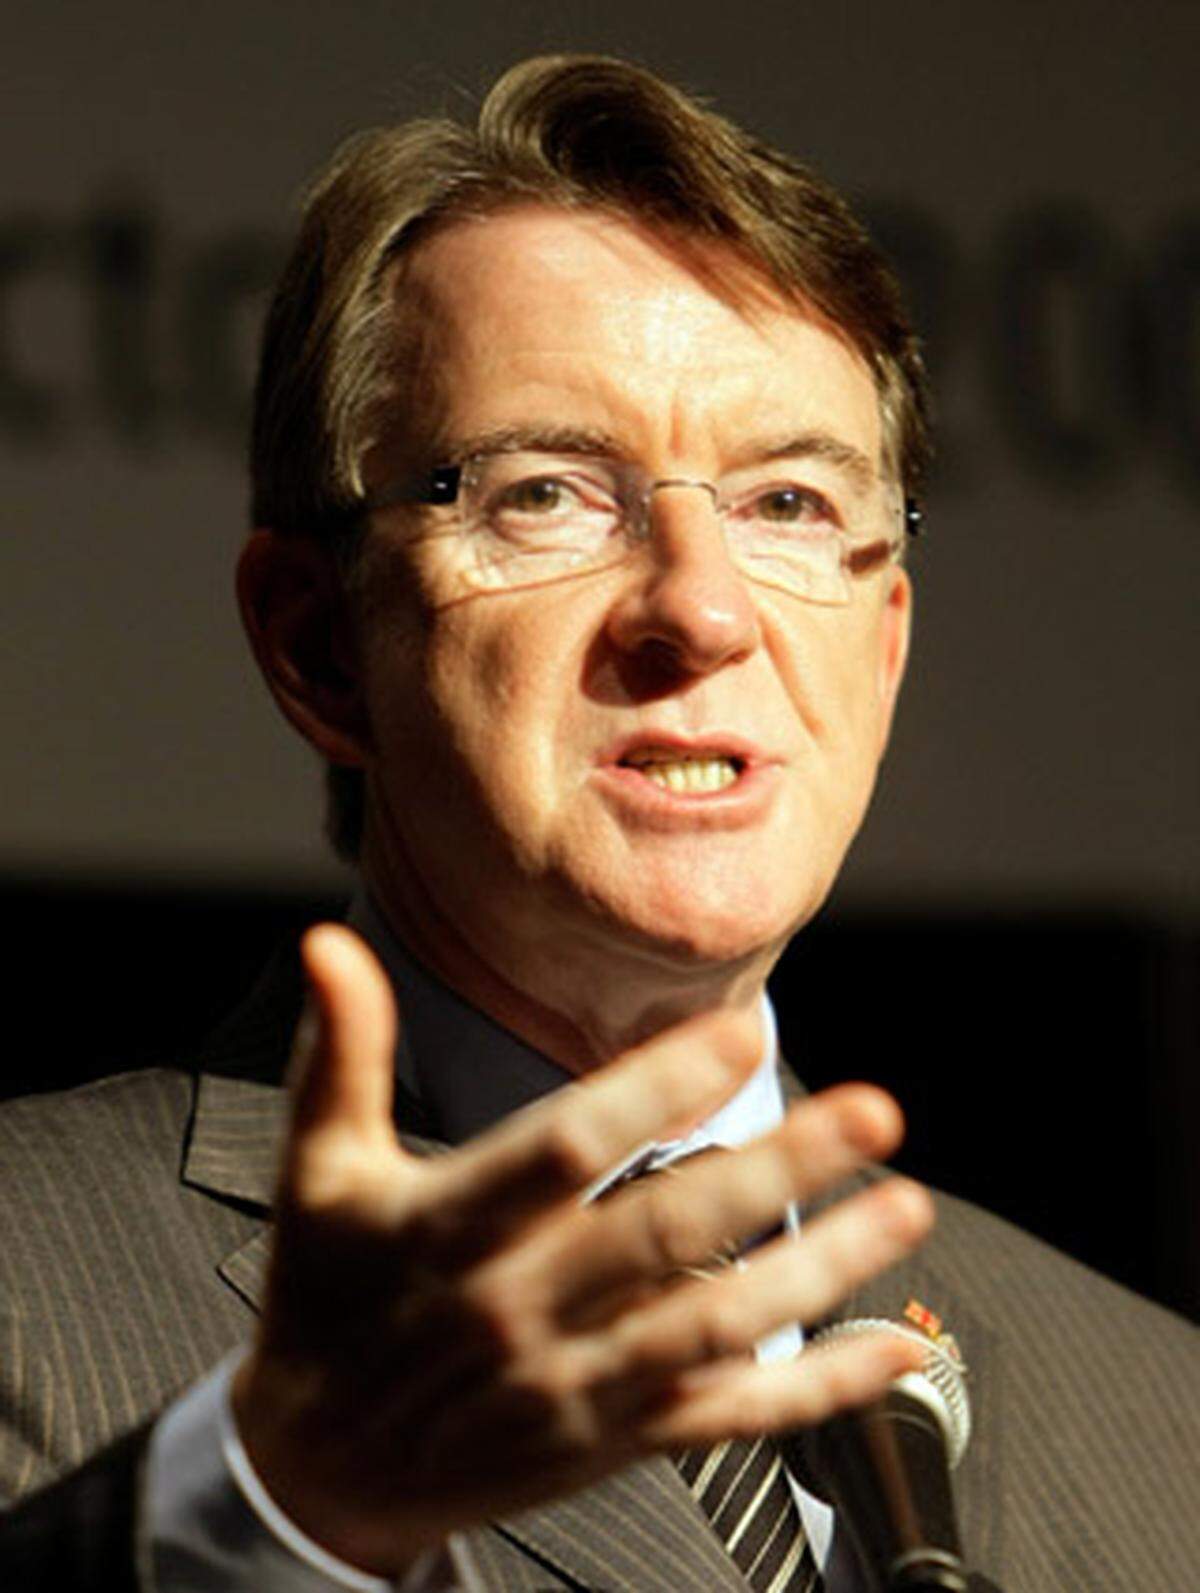 Der langjährige enge Mitarbeiter von Ex-Premier Tony Blair (1997-2007) ist einer der schillernsten und umstrittensten britischen Politiker. Unter Blair musste er zwei Mal wegen Korruptionsaffären als Minister zurücktreten. Im Jahr 2004 schaffte er sein Comeback, als ihn Blair zum EU-Handelskommissar machte. Seit Premier Gordon Brown den politischen Strategen wieder nach London zurückholte, ist Mandelson britischer Handelsminister. Er galt als "Alternativkandidat" Londons bei einem Verzicht Milibands.